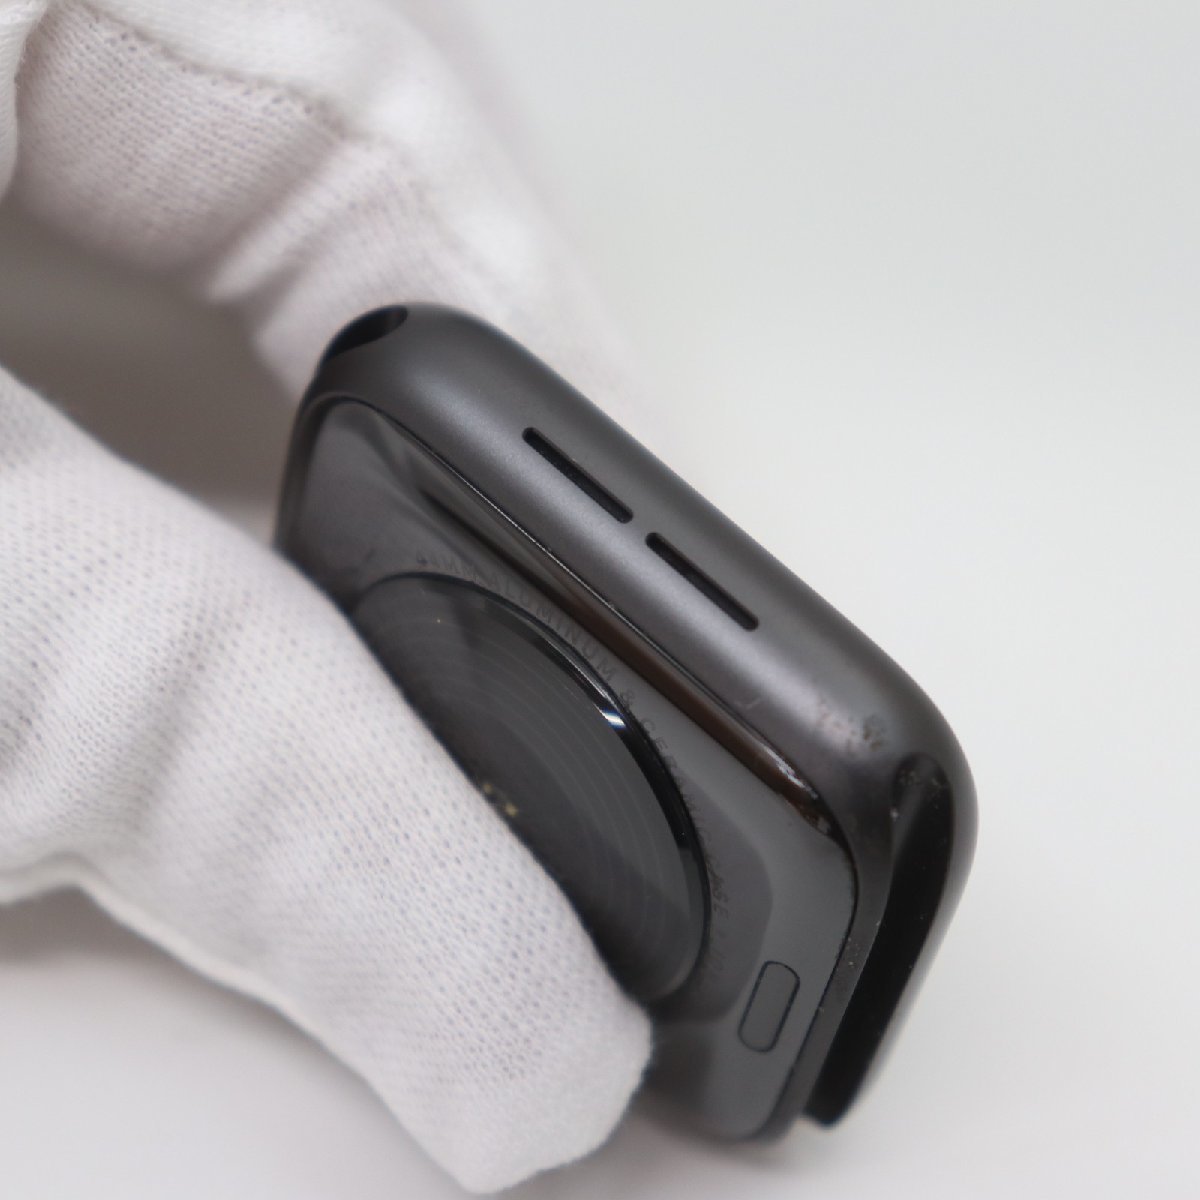 IT5KE6XFH1NC 即決 本物 Apple Watch アップルウォッチ NIKE SE GPSモデル 44mm MKQ83J/A ナイキ ベルト バッテリー最大容量100%_画像6